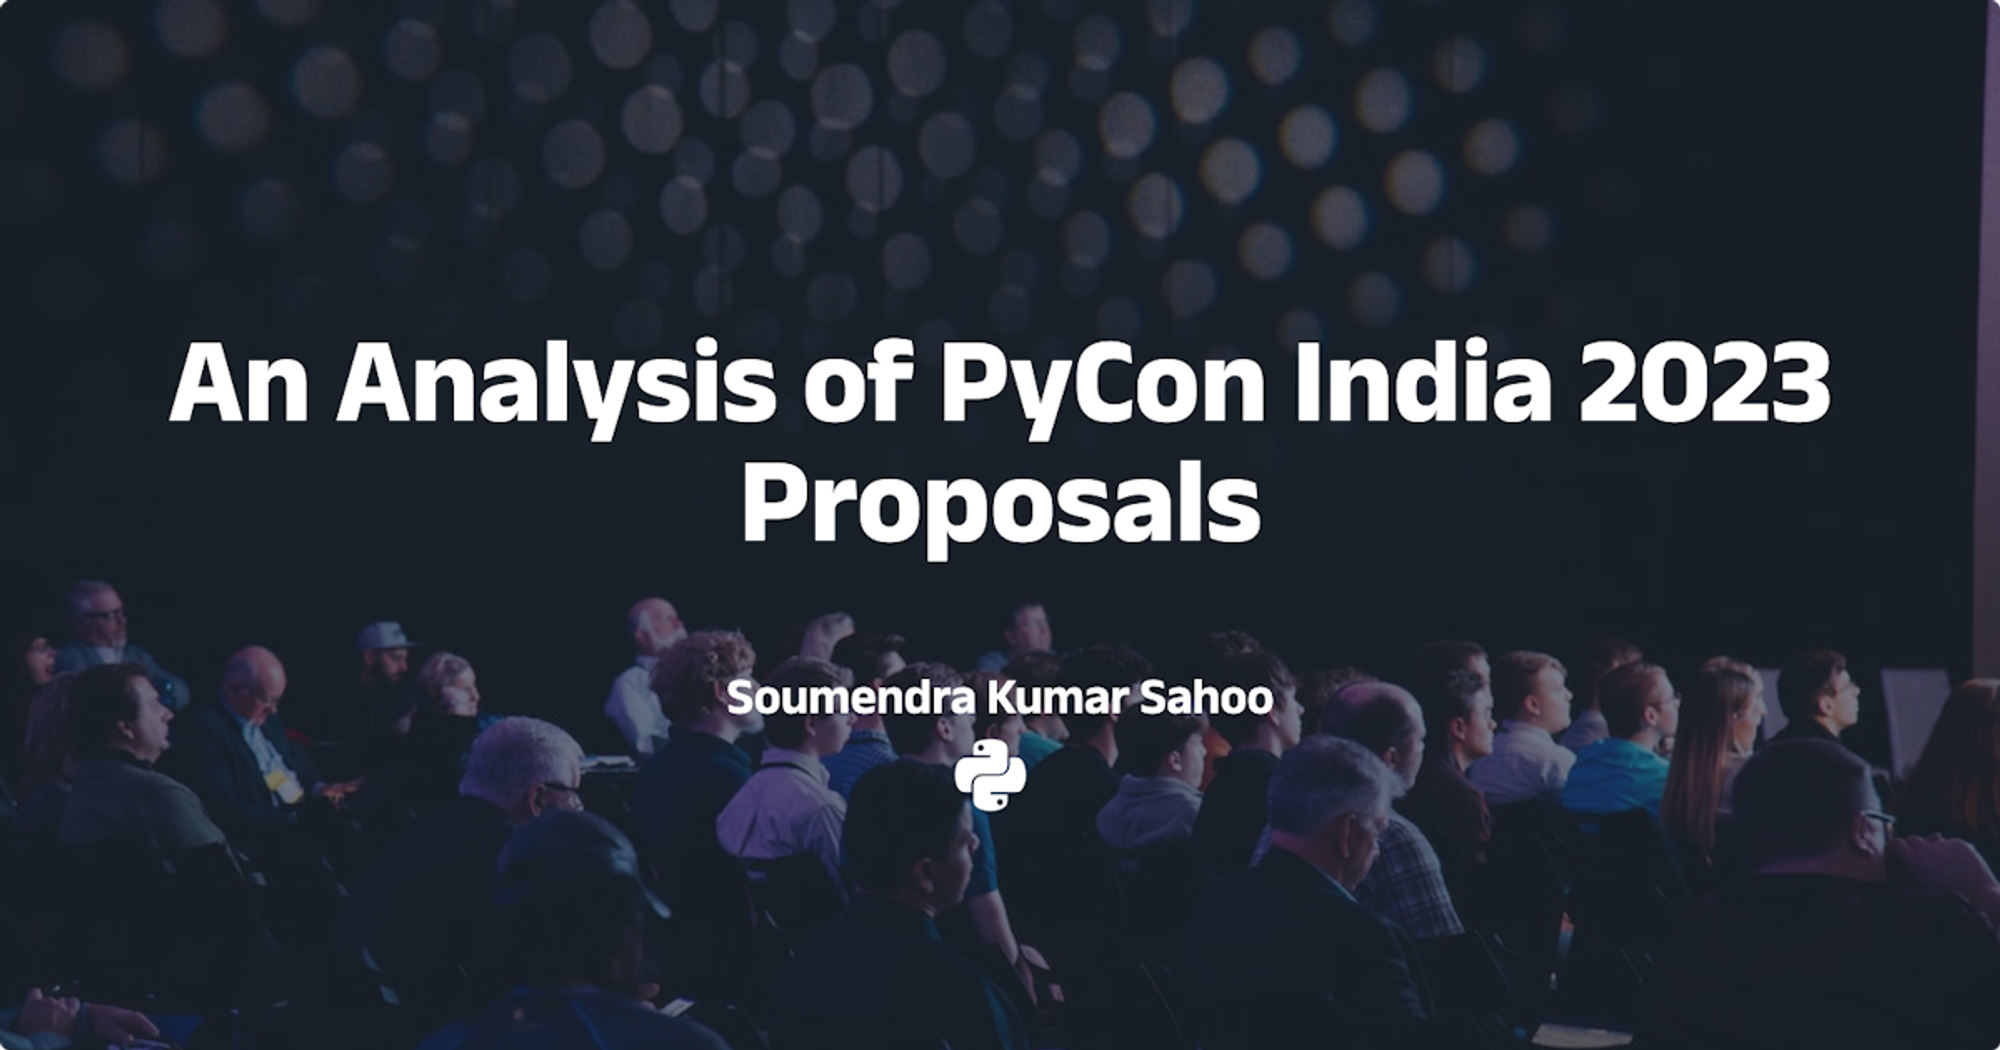 PyCon India 2023 Proposals Analysis